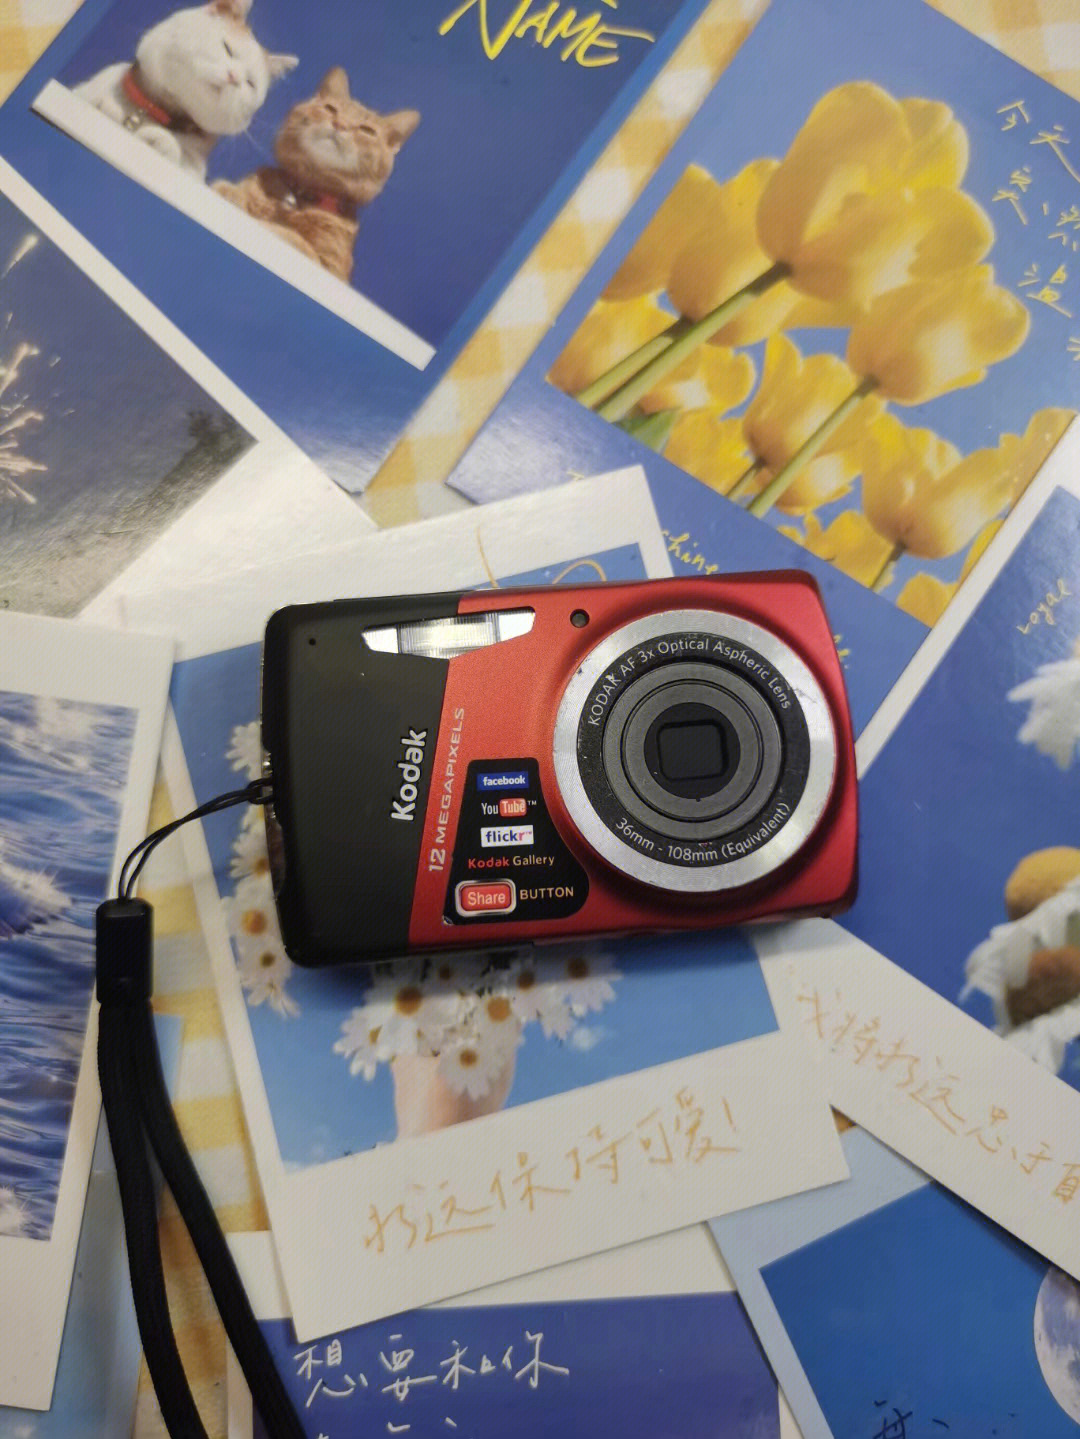 柯达m530相机使用教程图片